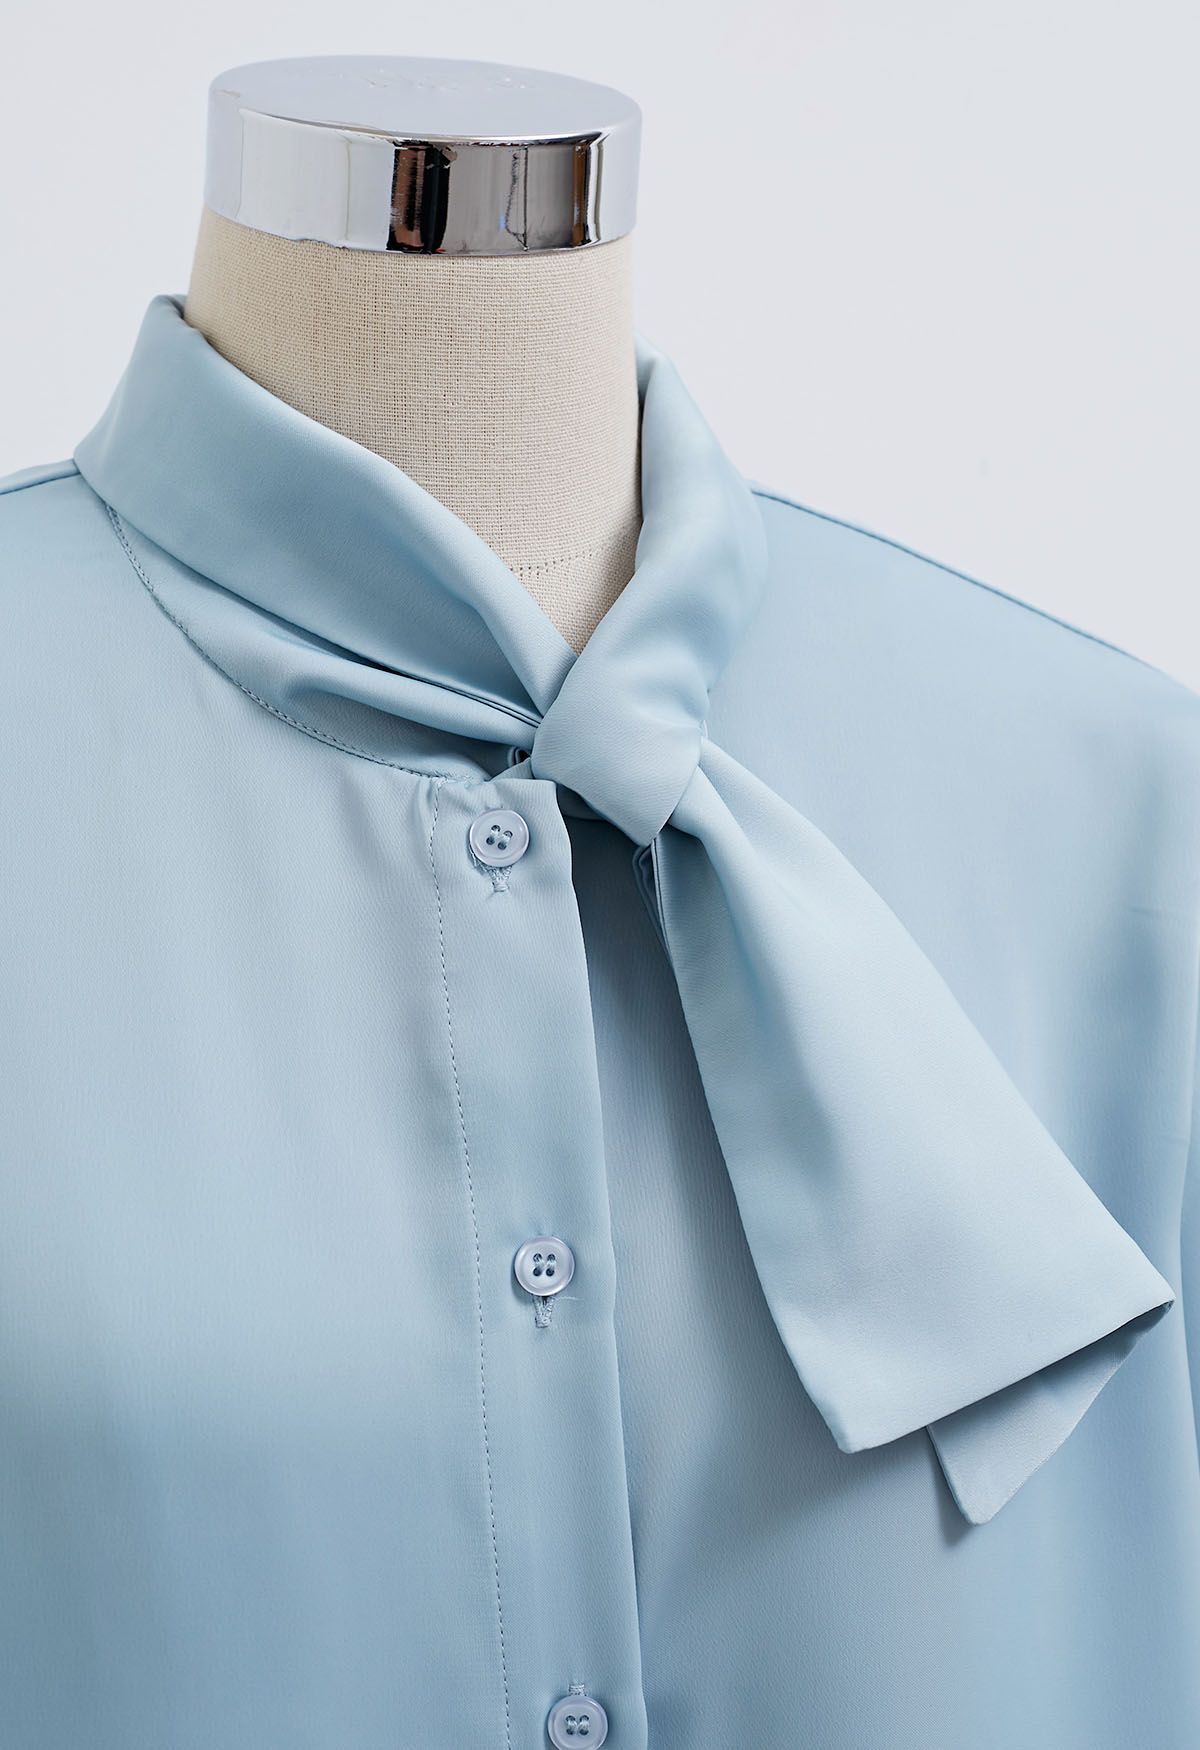 Blaues Satinhemd mit Knopfleiste zum Binden am Hals